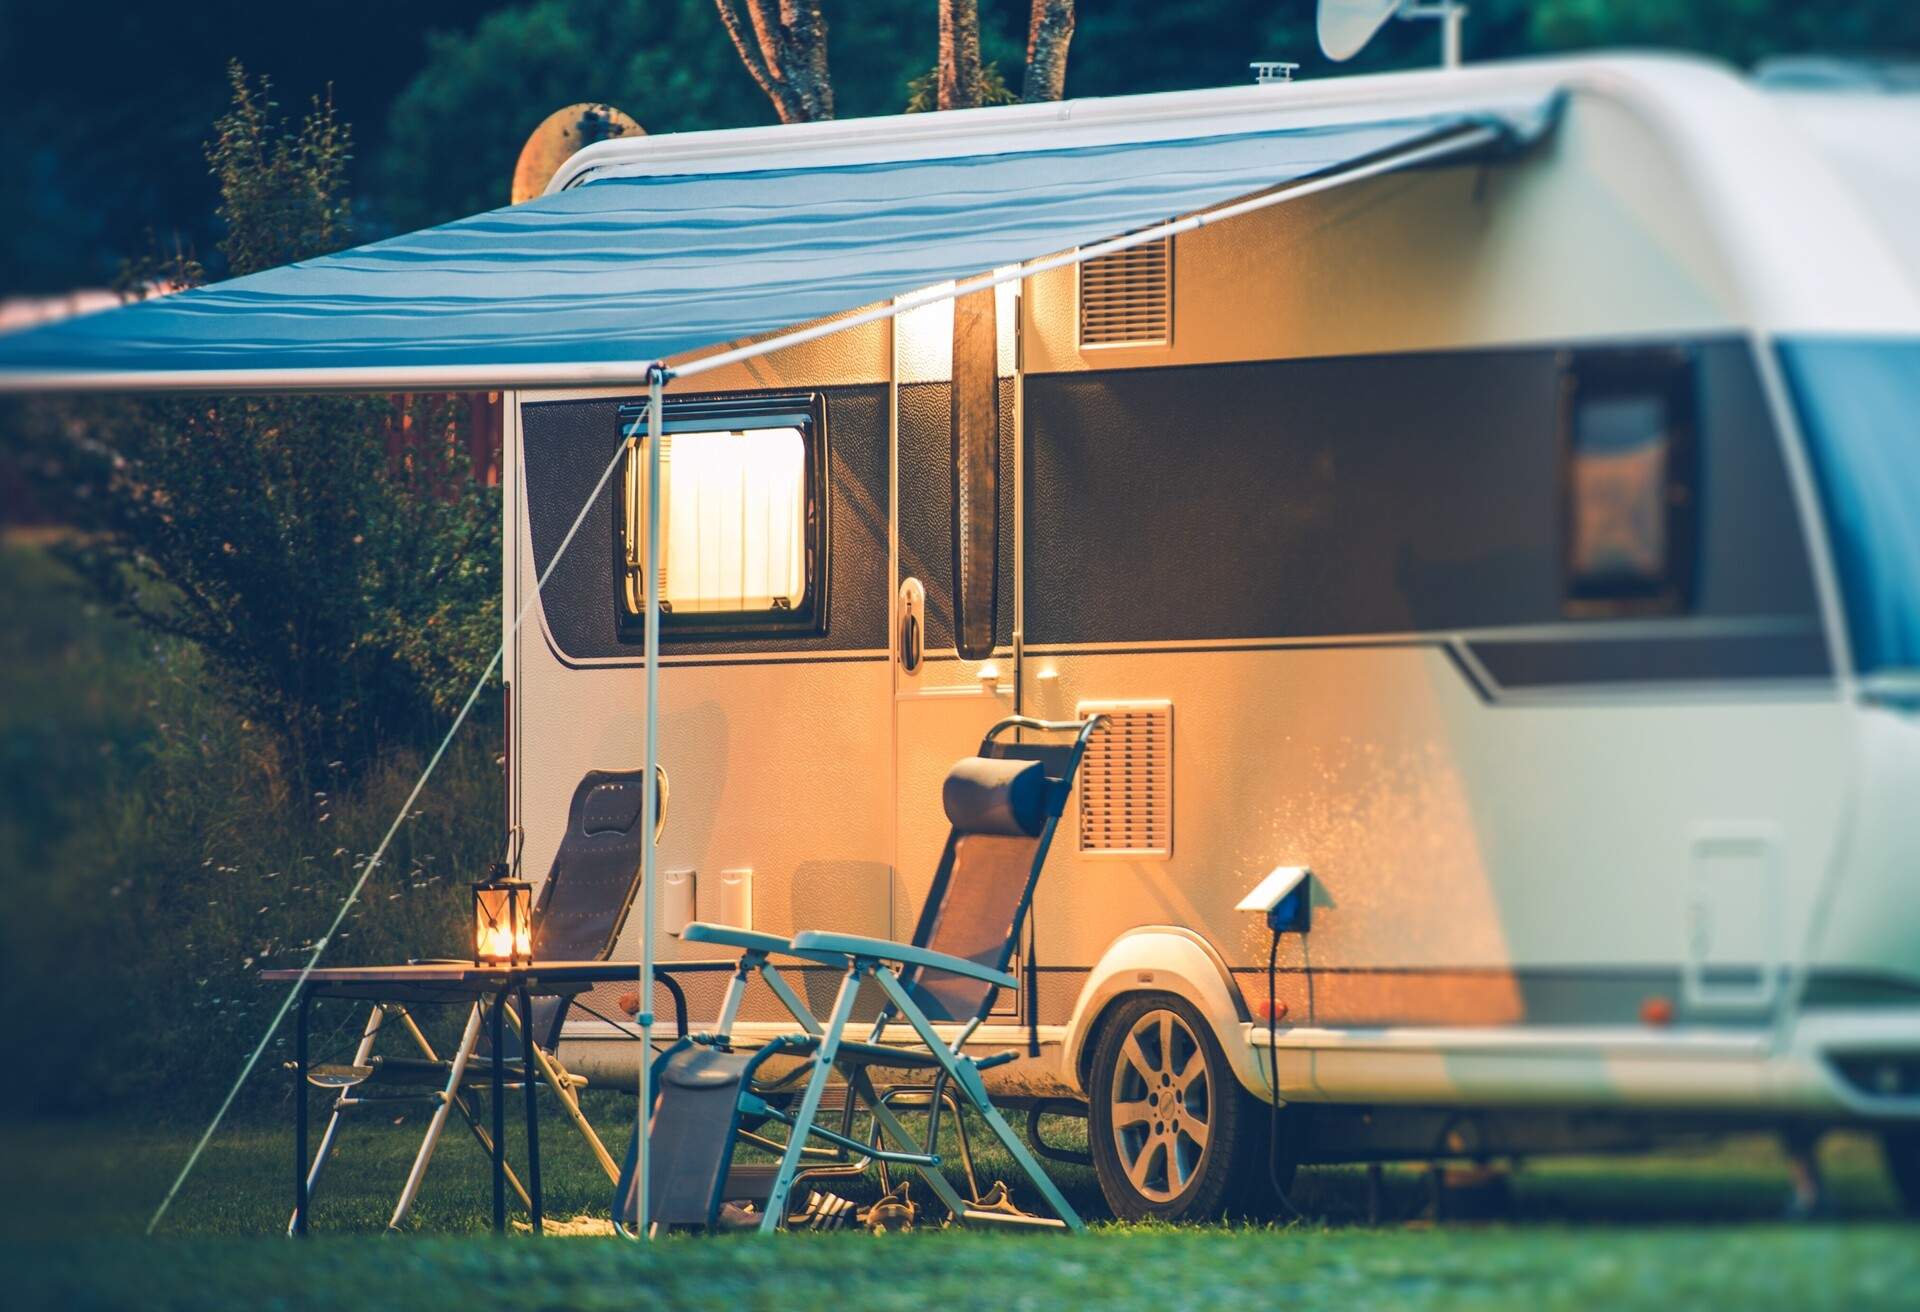 Travel Trailer Caravaning. RV Park Camping at Night. ; Shutterstock ID 496080748